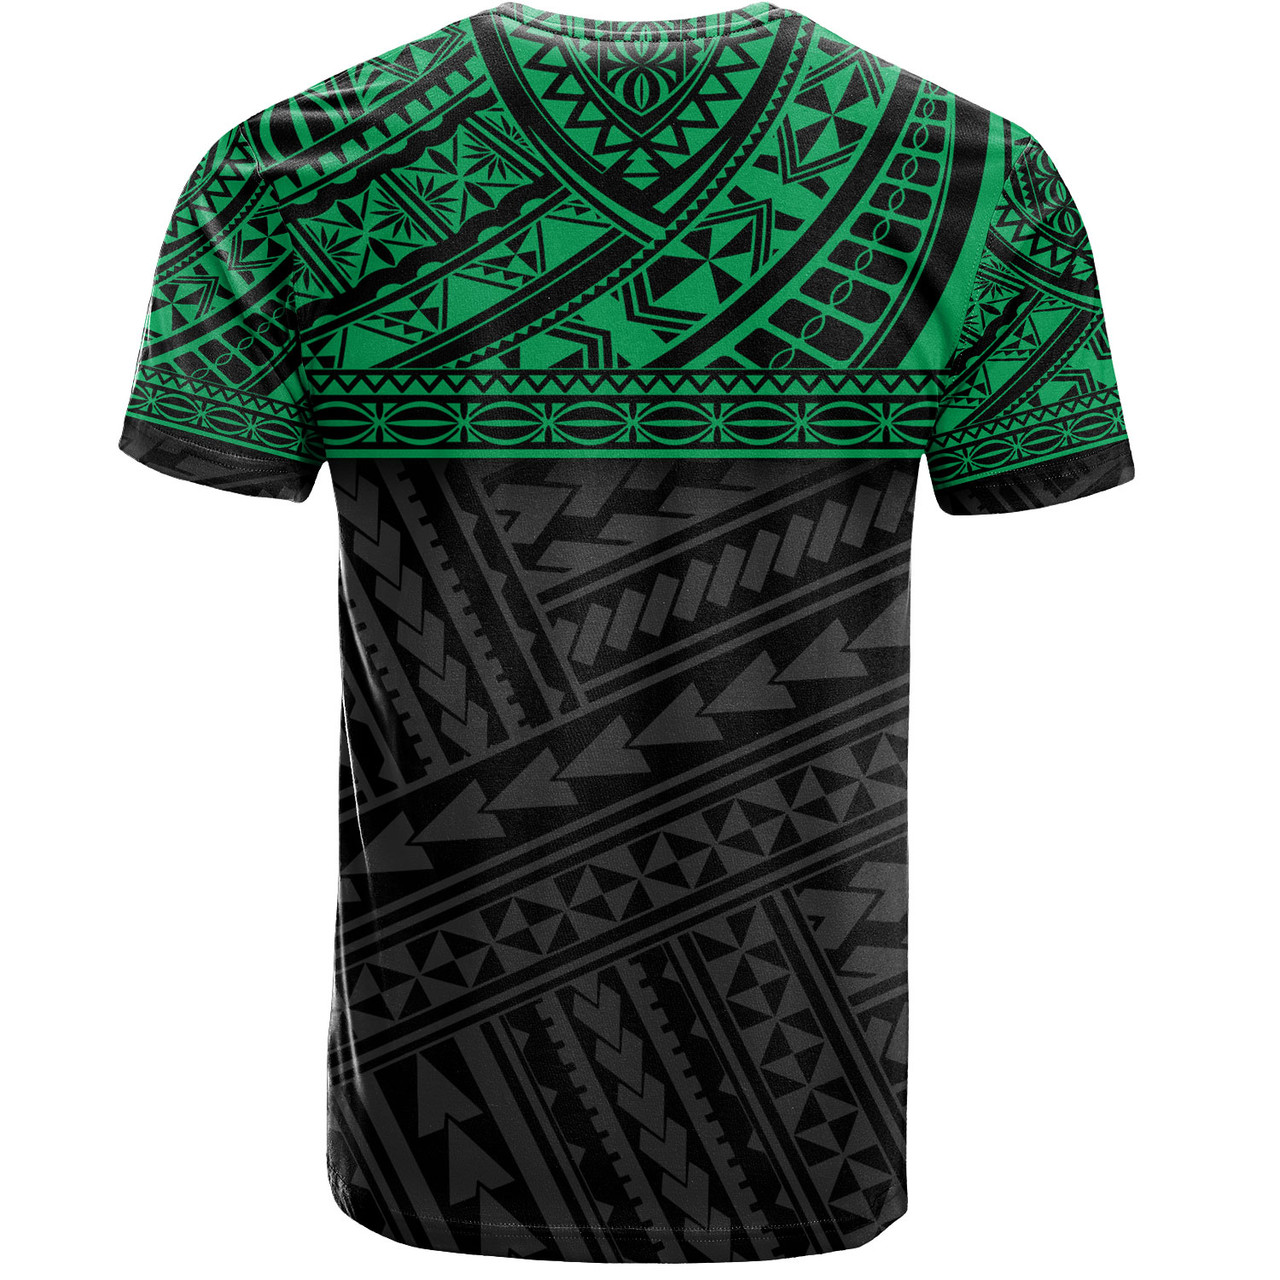 Polynesian Custom Personalised T-Shirt Polynesian Tribal Patterns